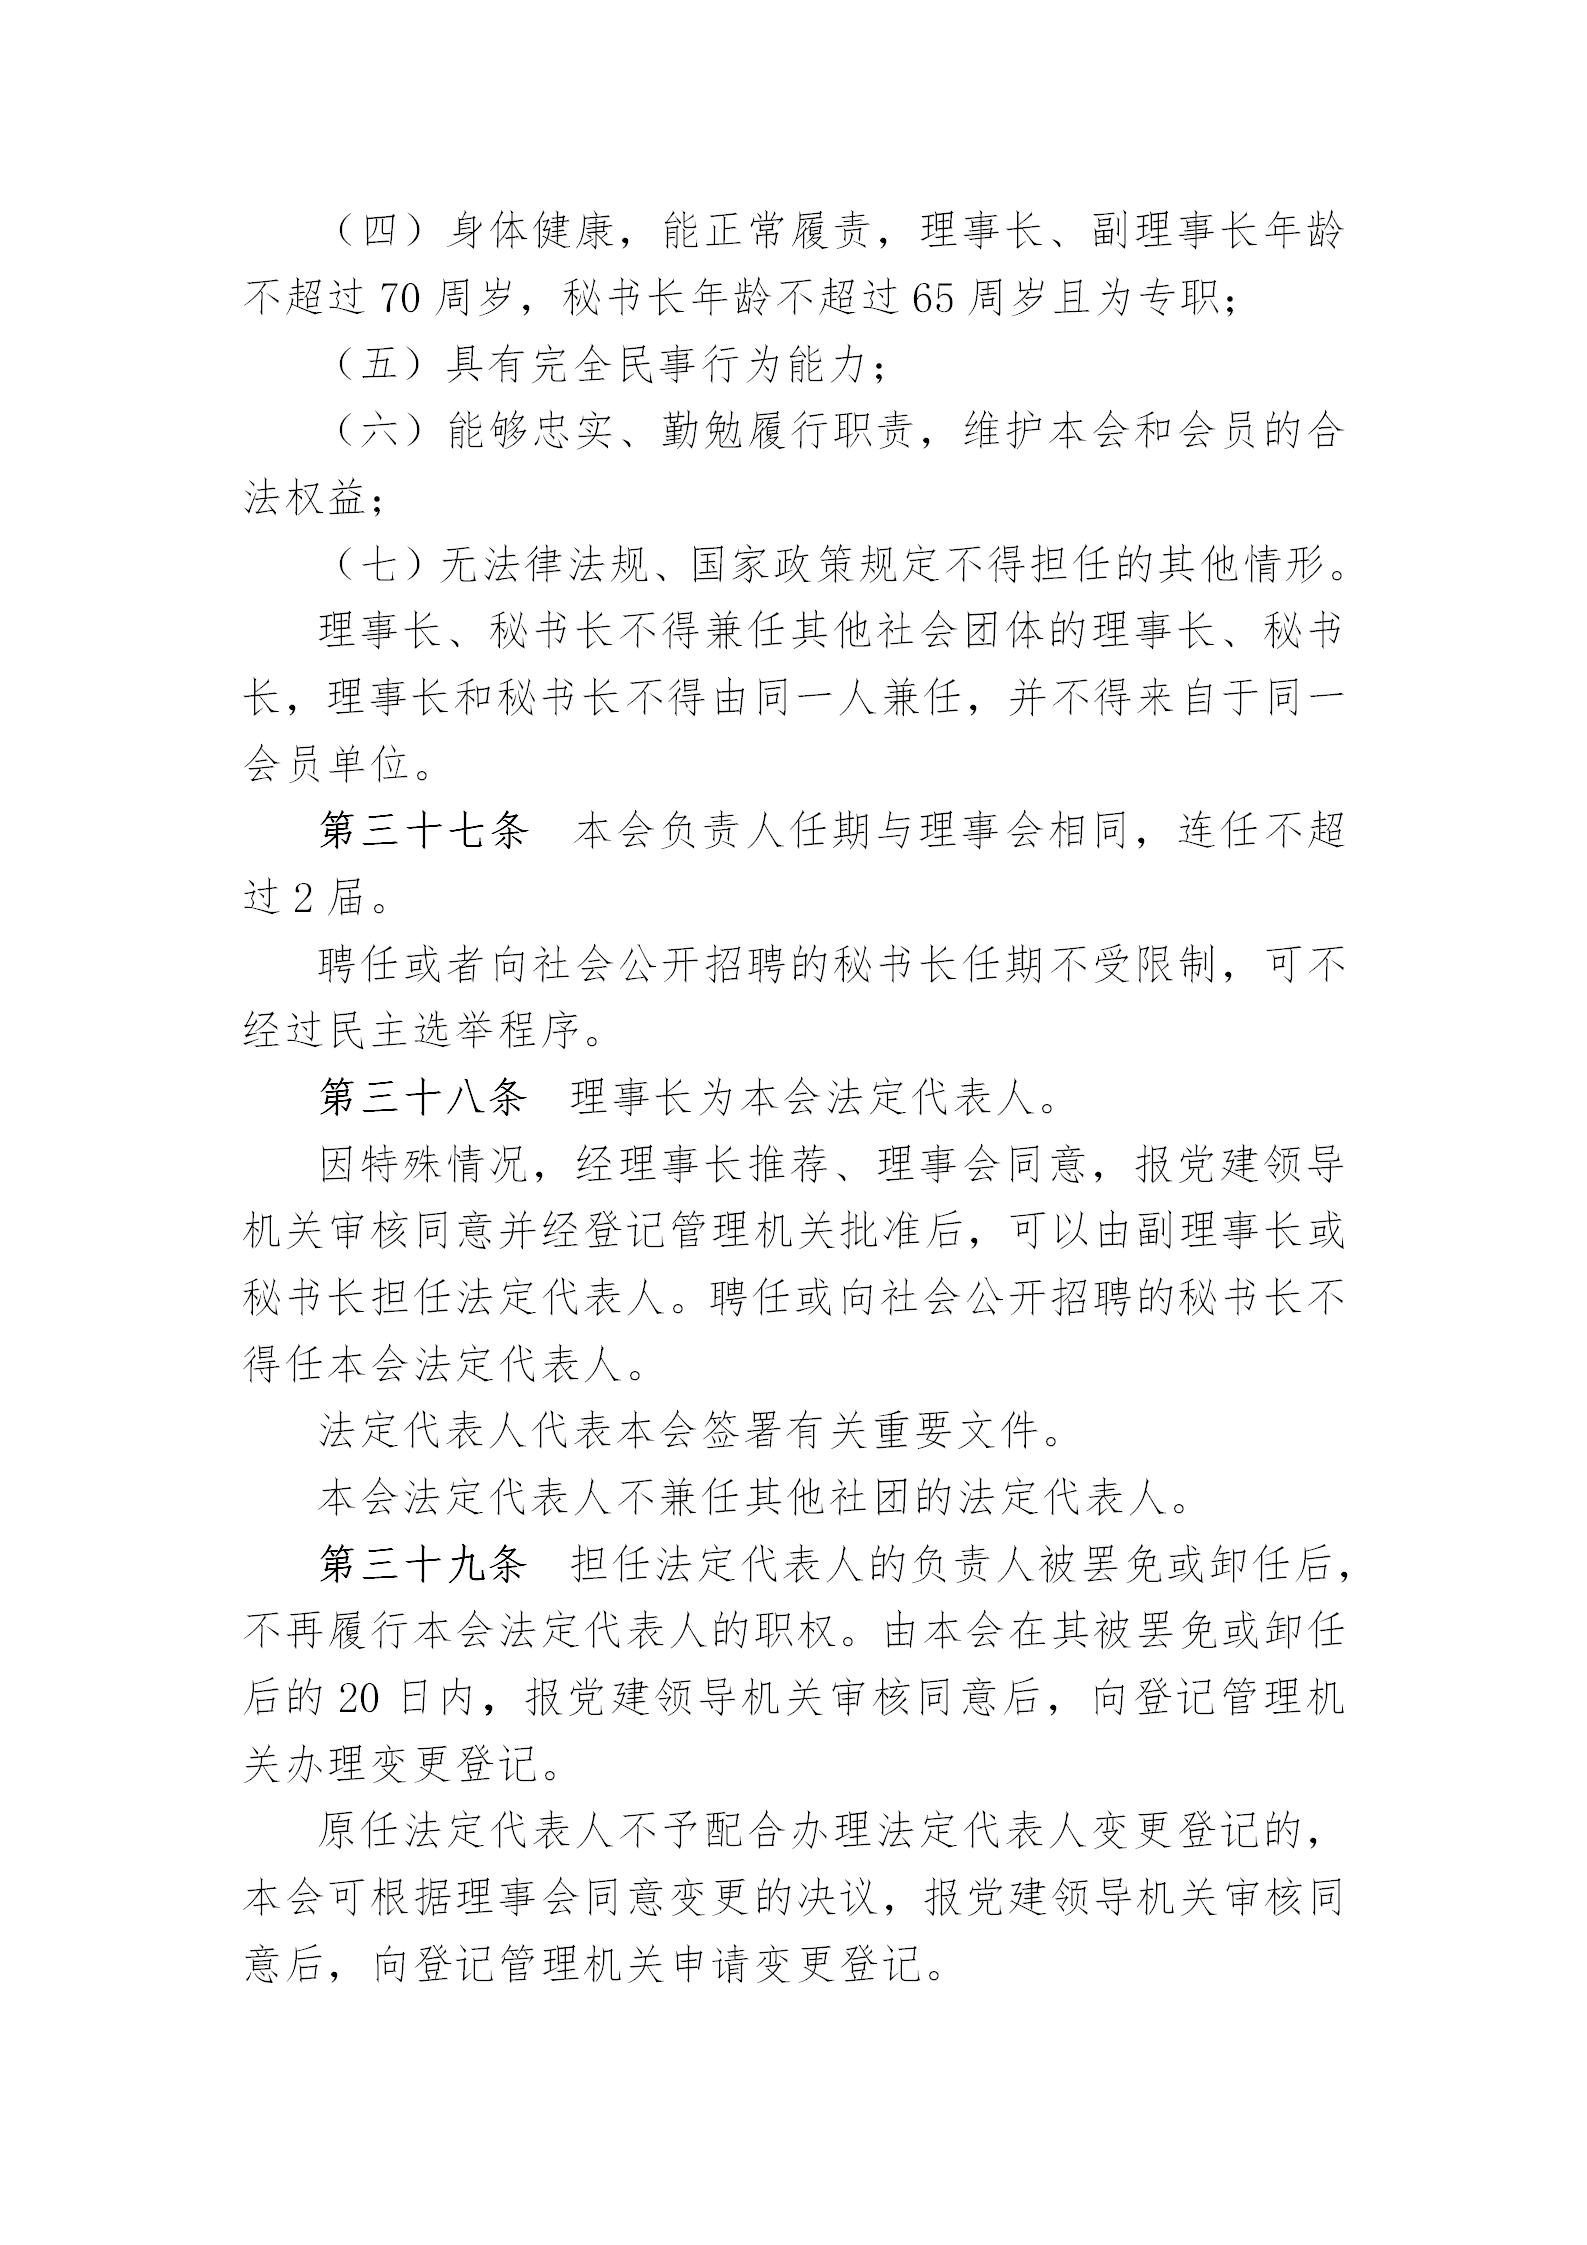 中国演艺设备技术协会章程(定稿)_11.jpg